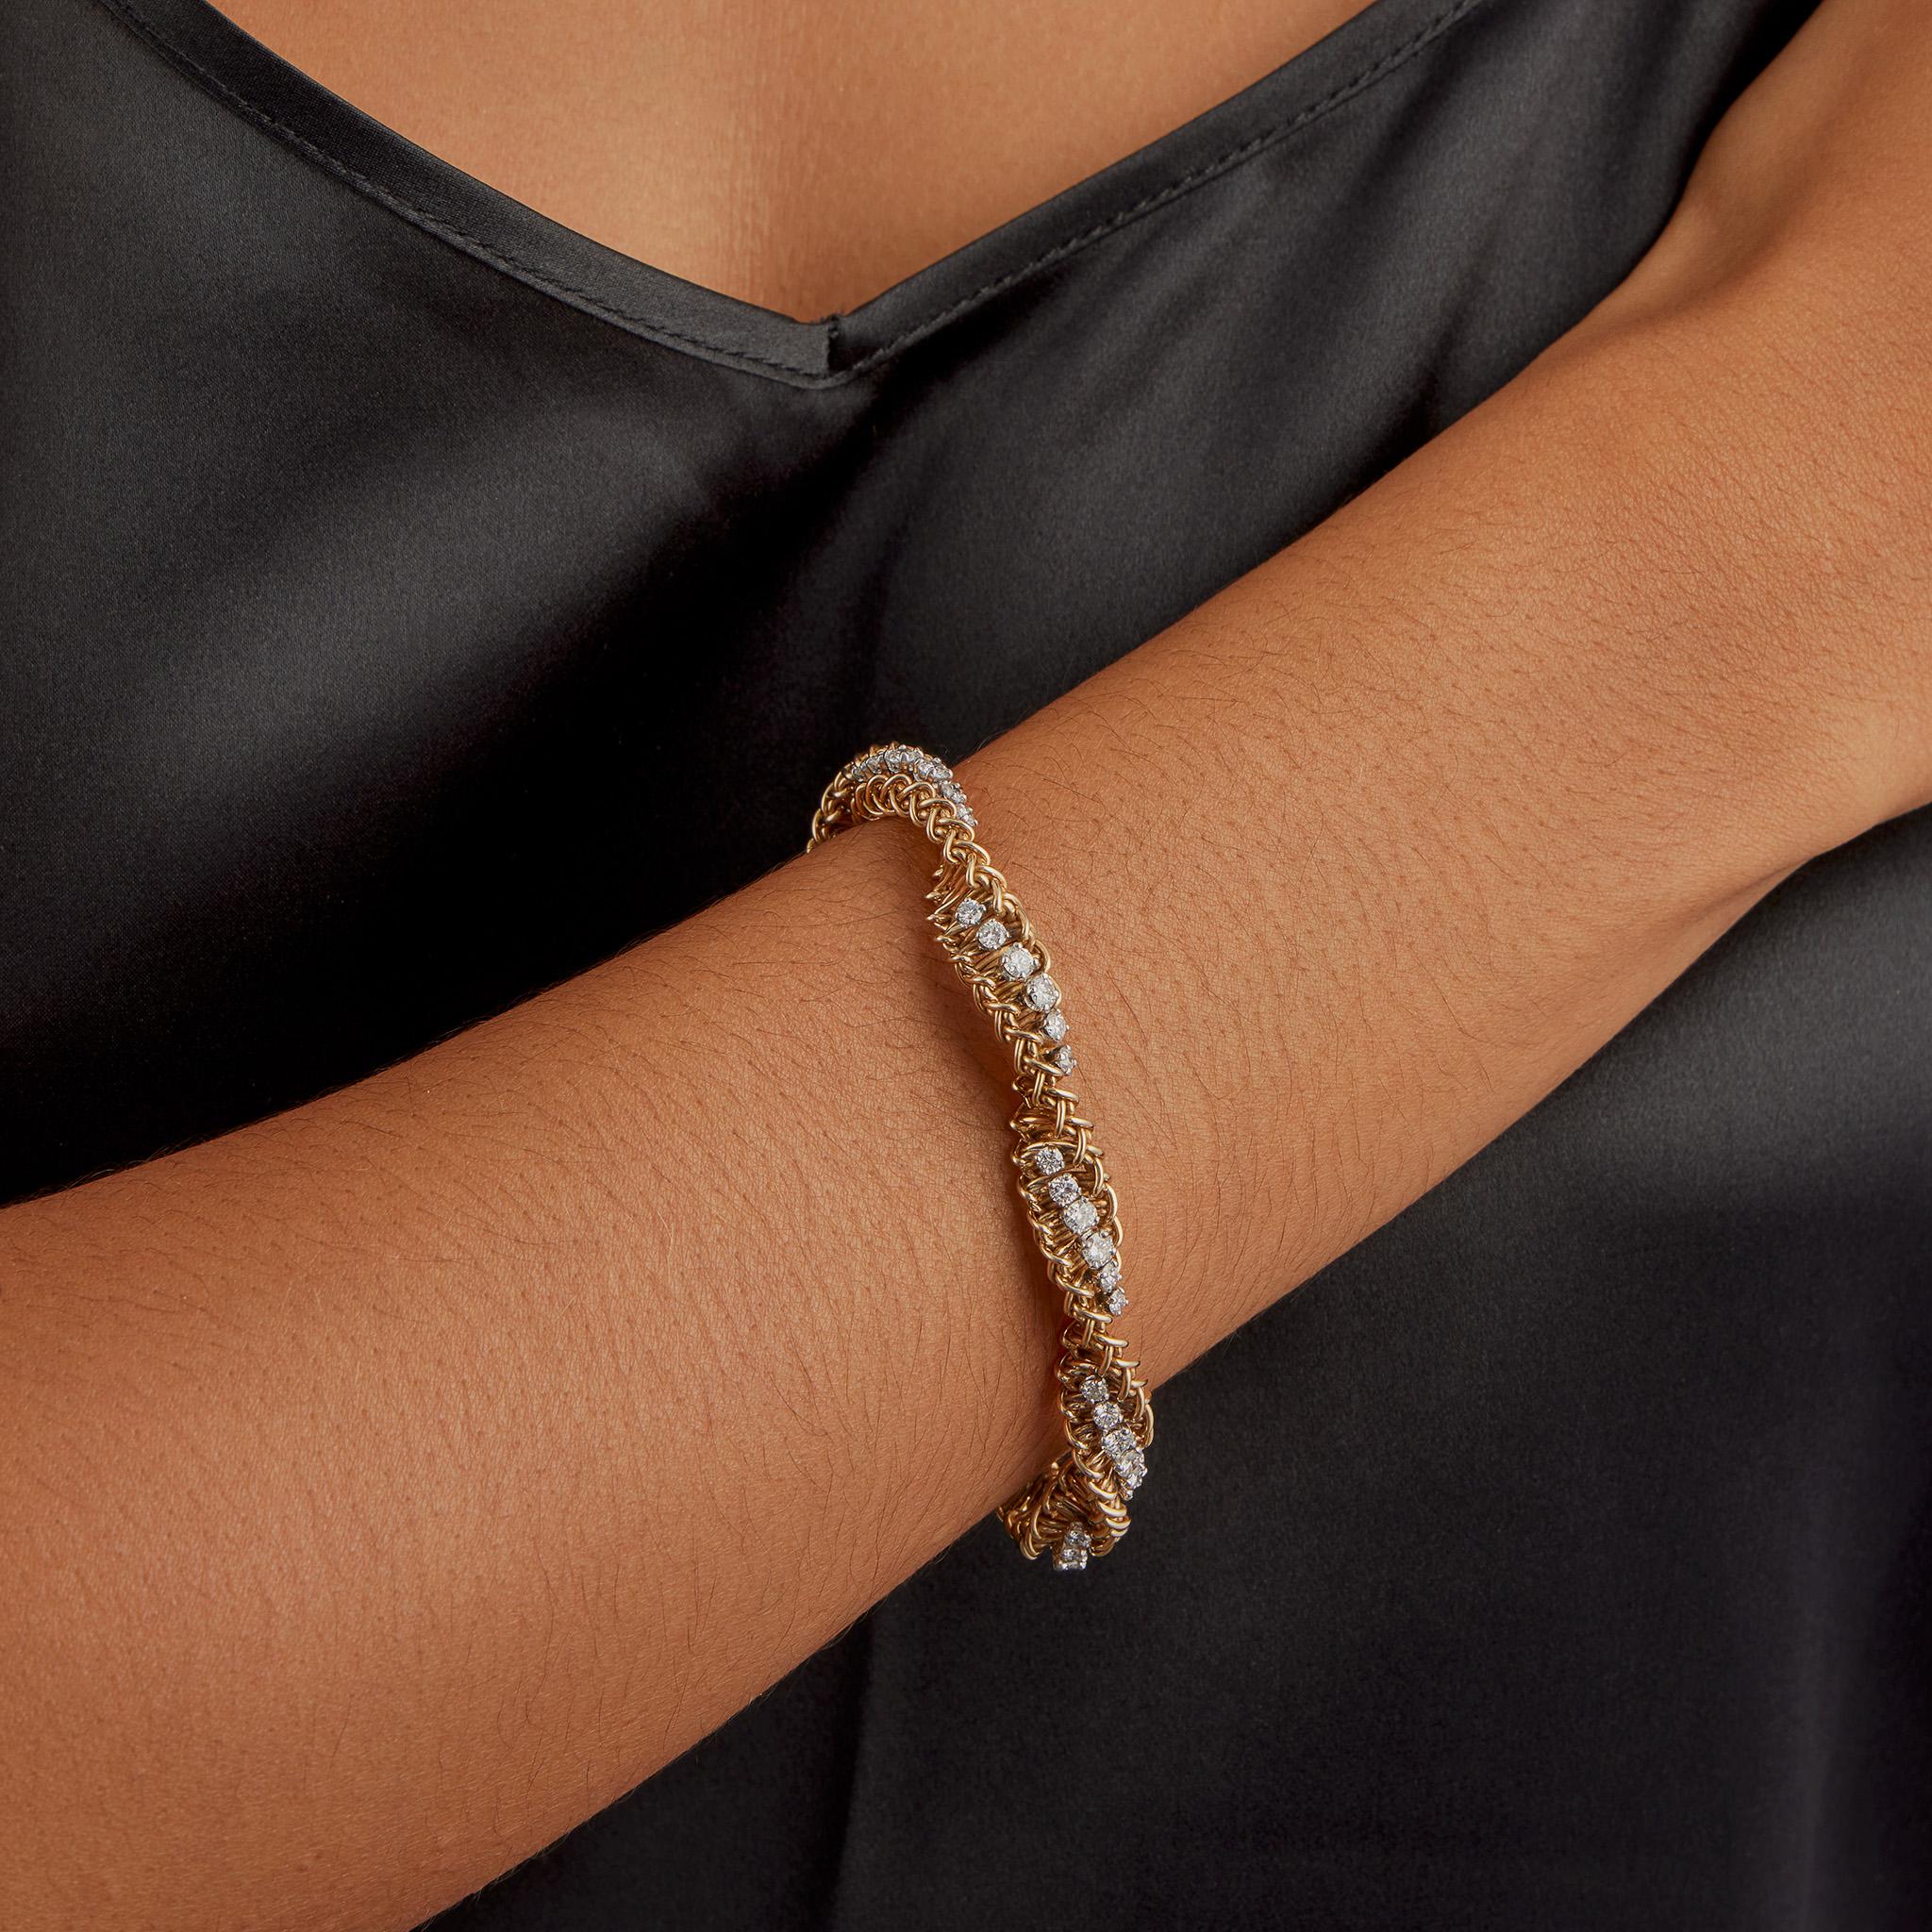 Dieses in den 1960er- bis 1970er-Jahren kreierte Armband aus 18 Karat Gold ist mit über 5 Karat Diamanten im Brillantschliff besetzt. Er ist in Form einer verschlungenen Doppelhelix aus ineinander verwobenem Doppeldraht gestaltet, der in Abständen